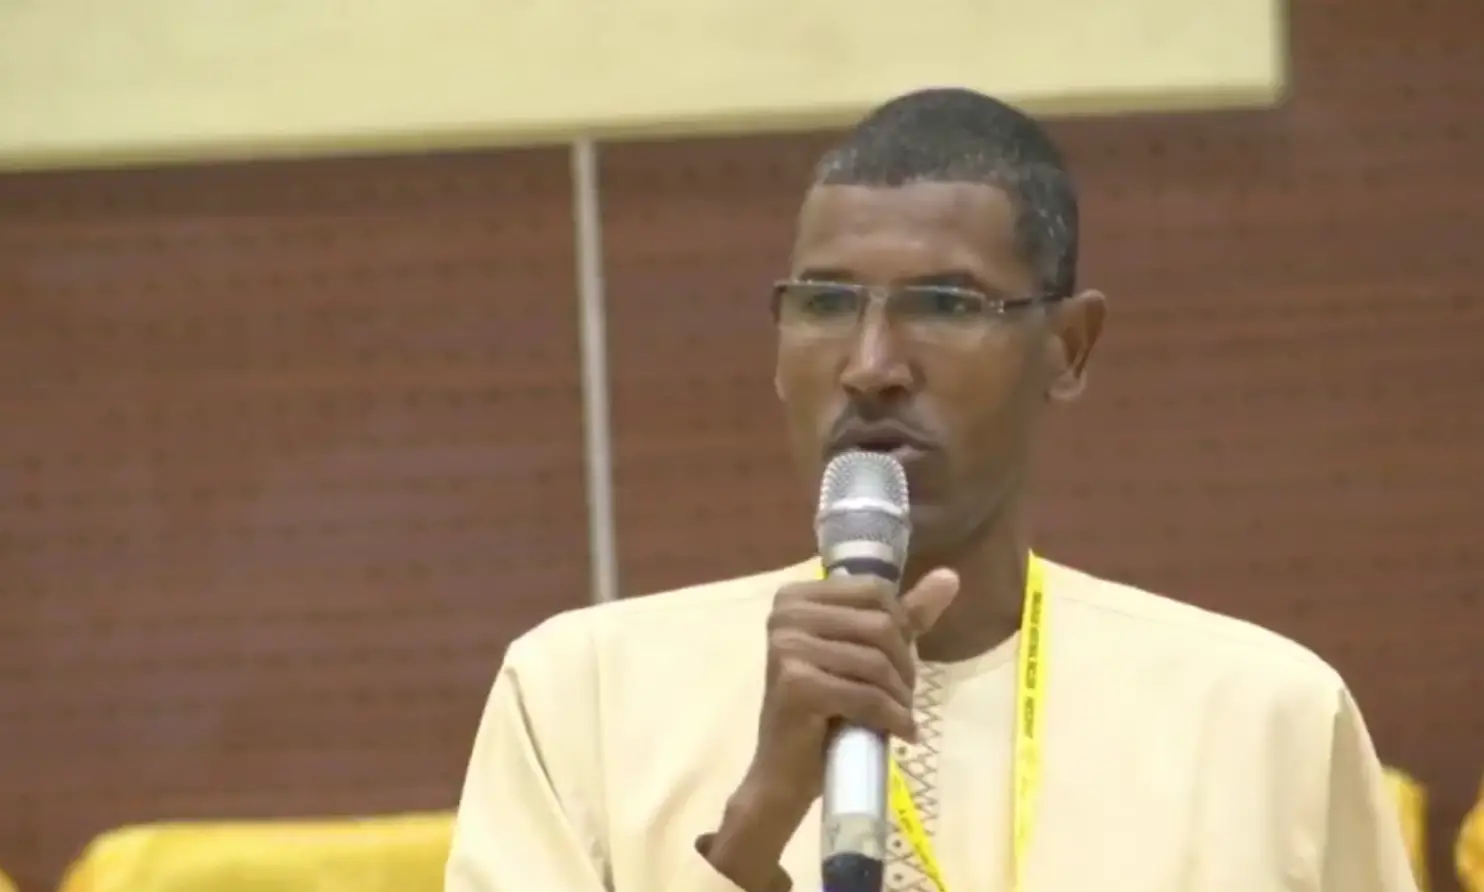 Tchad : "le ratio de la masse salariale sur les recettes ordinaires ne doit pas dépasser 35%", Ali Ahmat Bremé